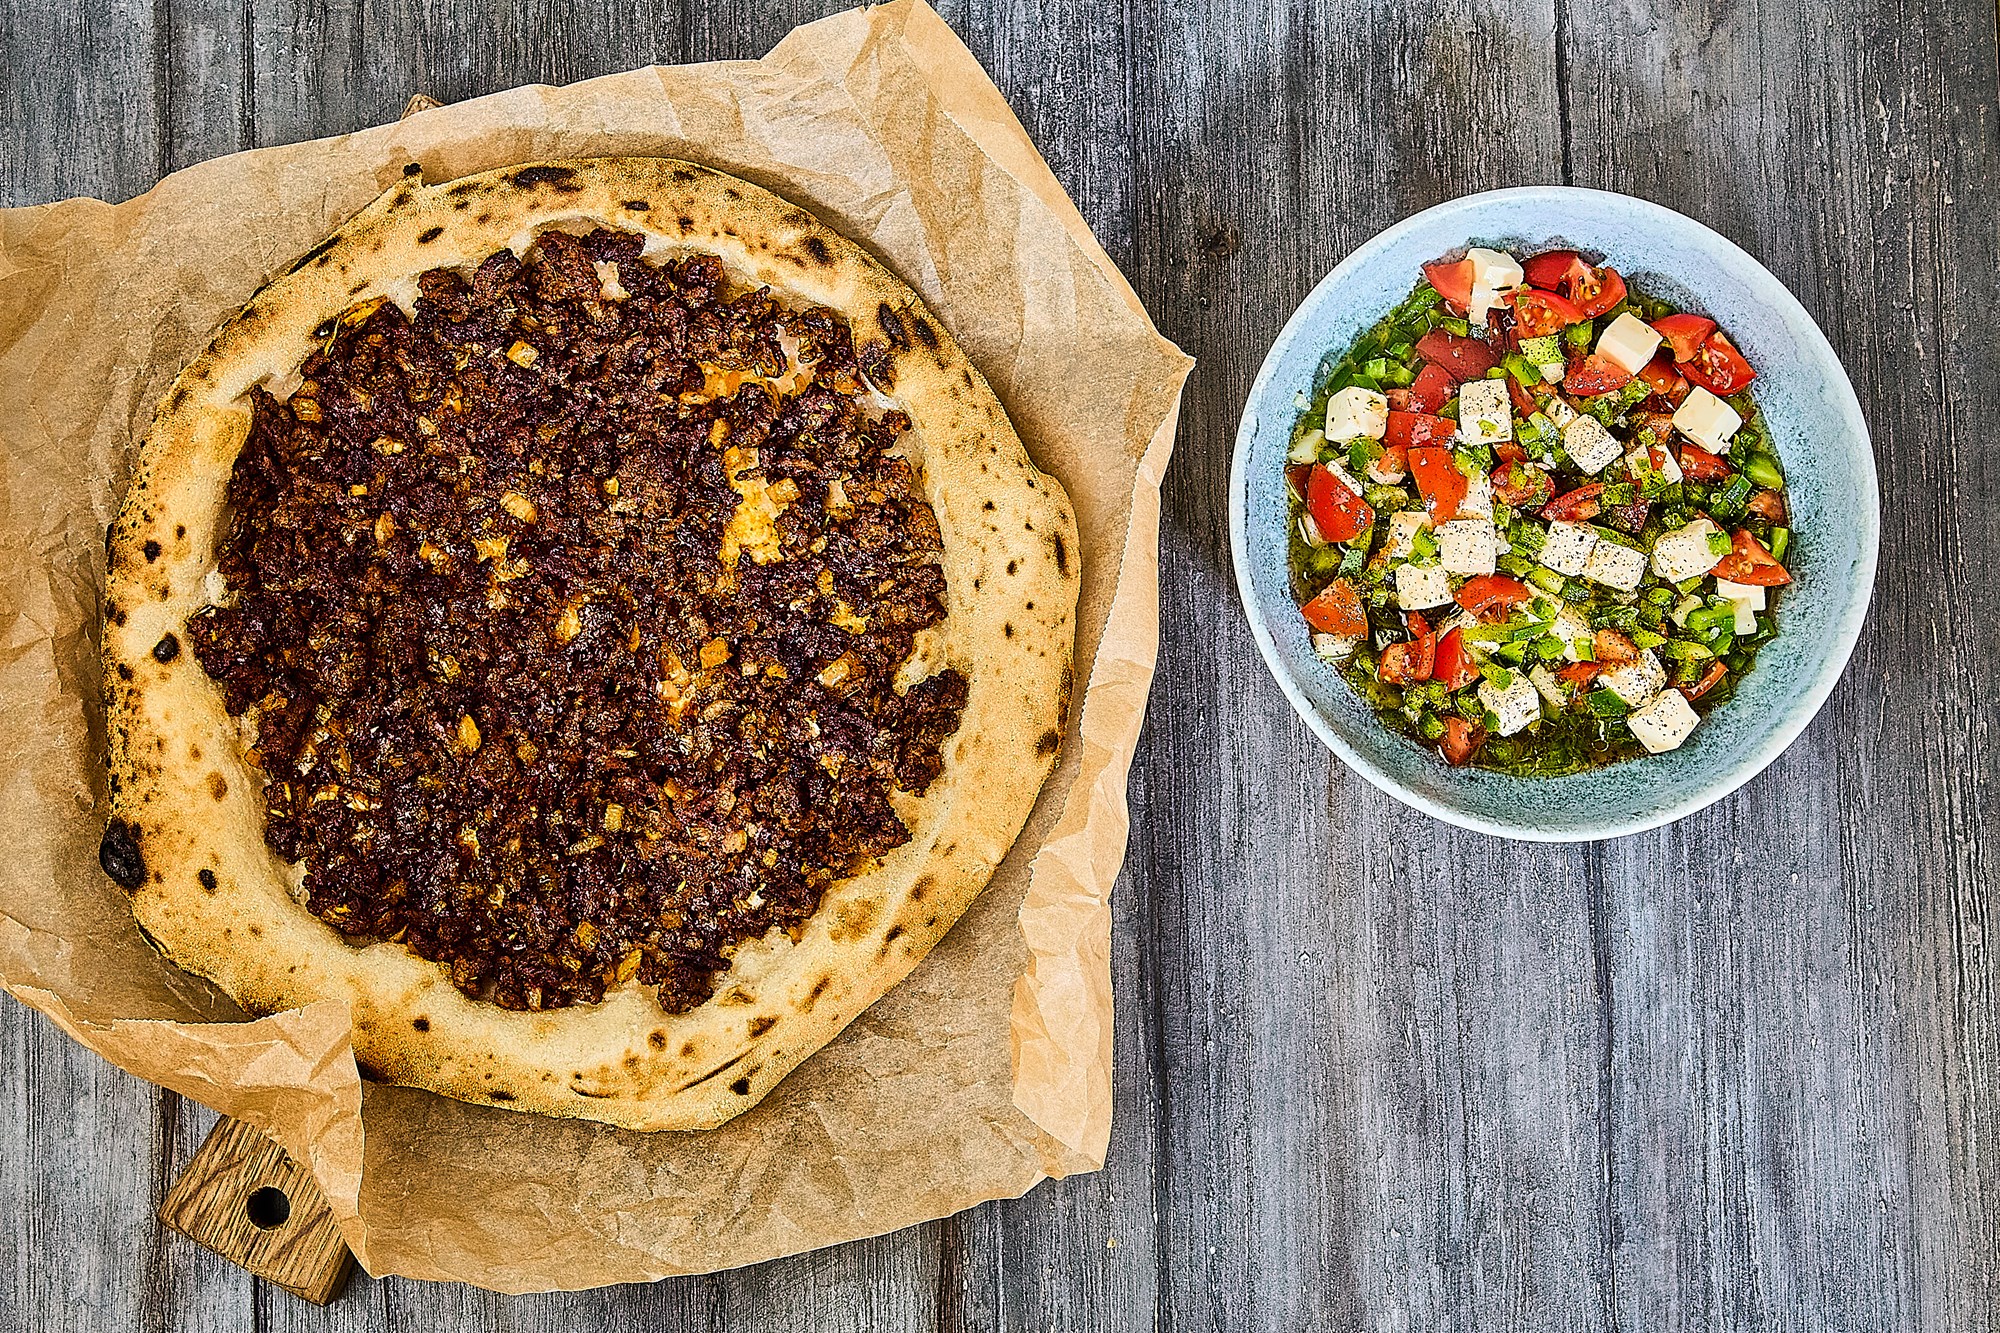 Tyrkisk pizza "Lahmacun" med ezme salat